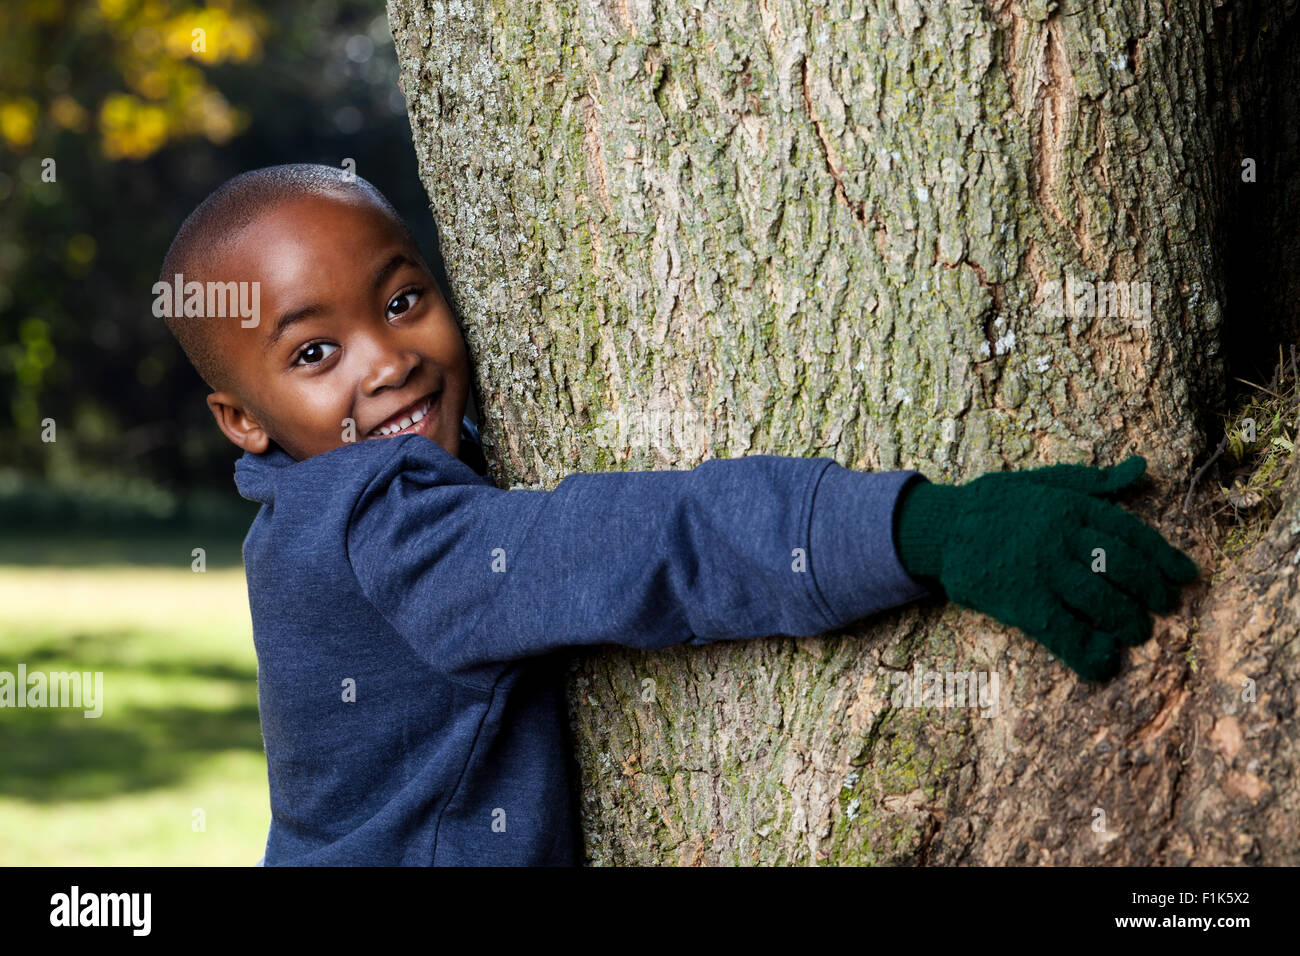 Young African boy hugging un arbre dans un parc tandis que smiling at camera Banque D'Images